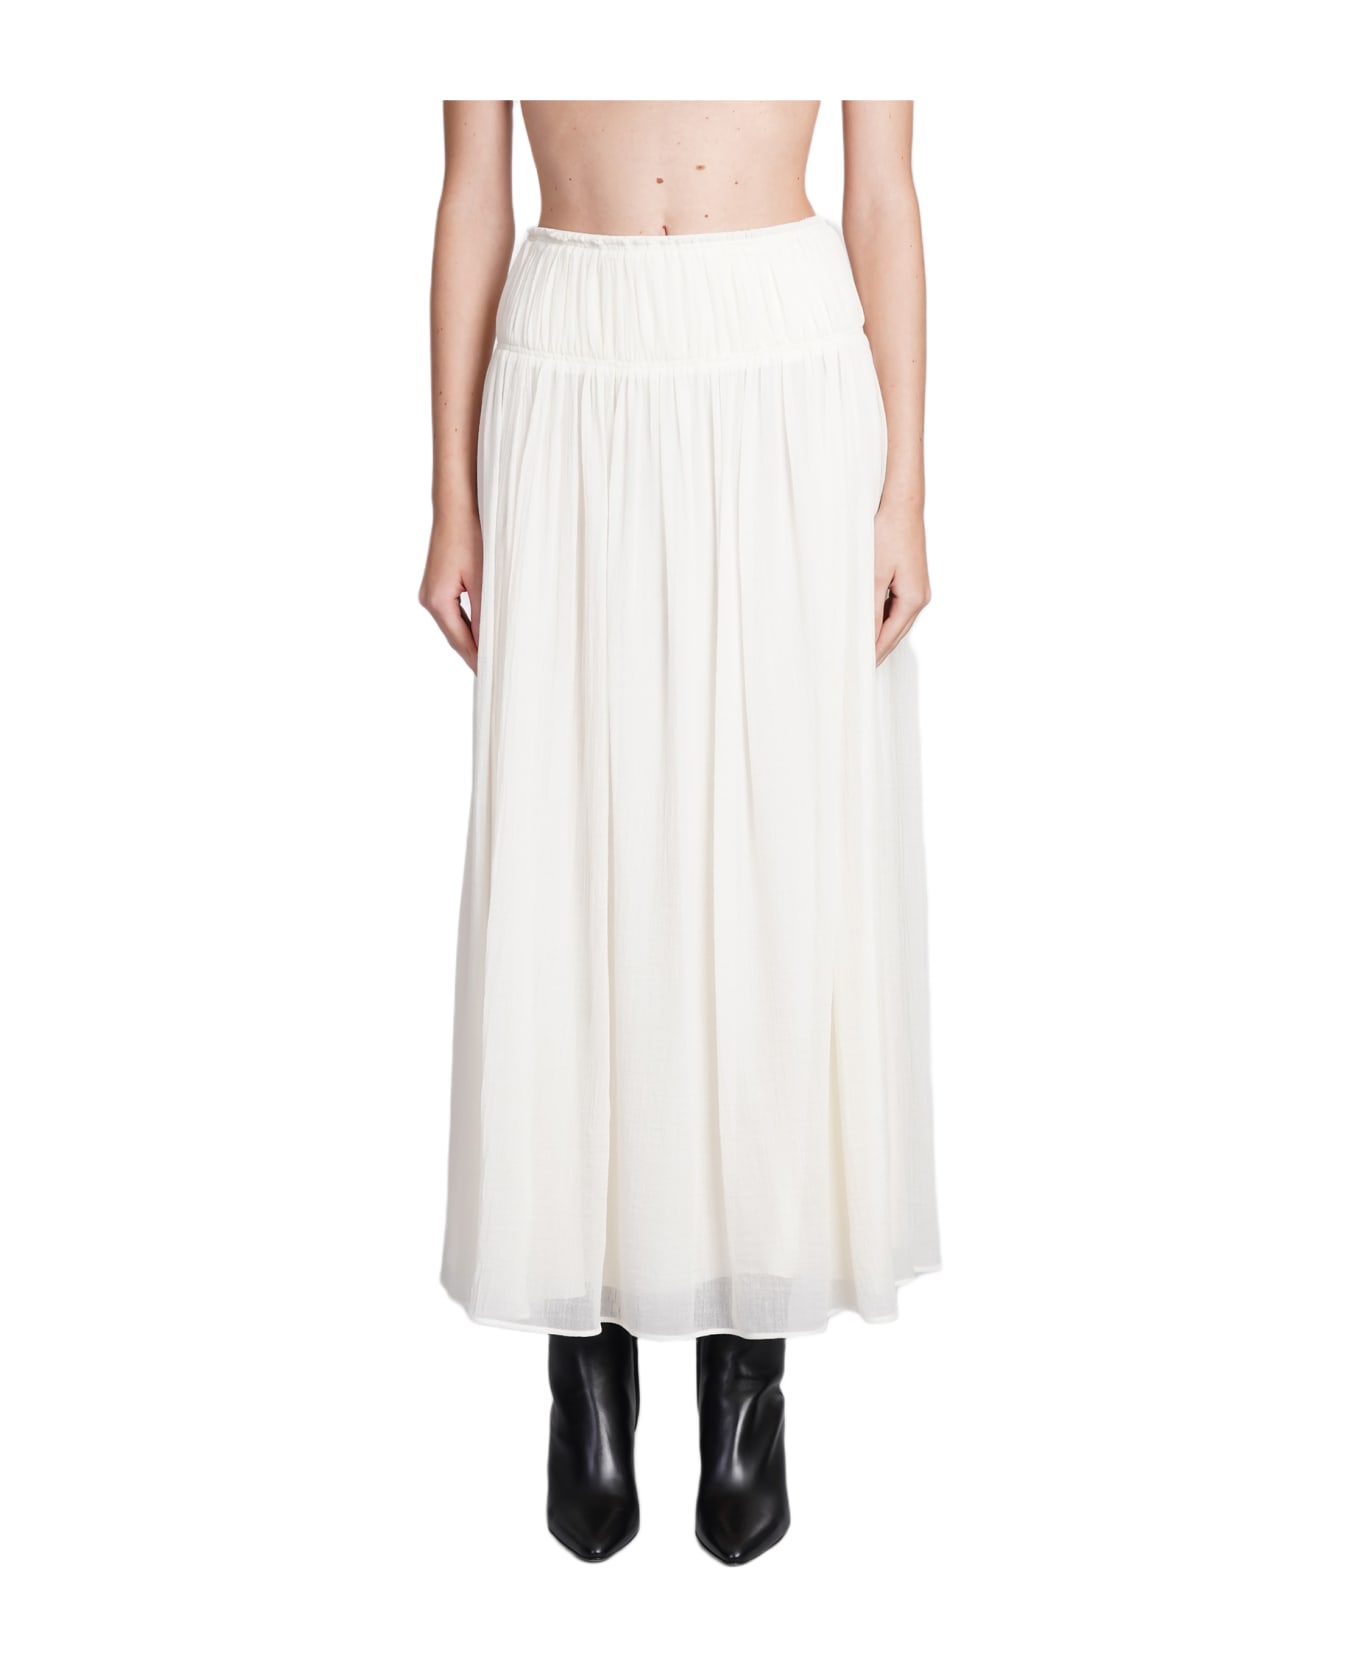 Chloé Skirt - Eden White スカート